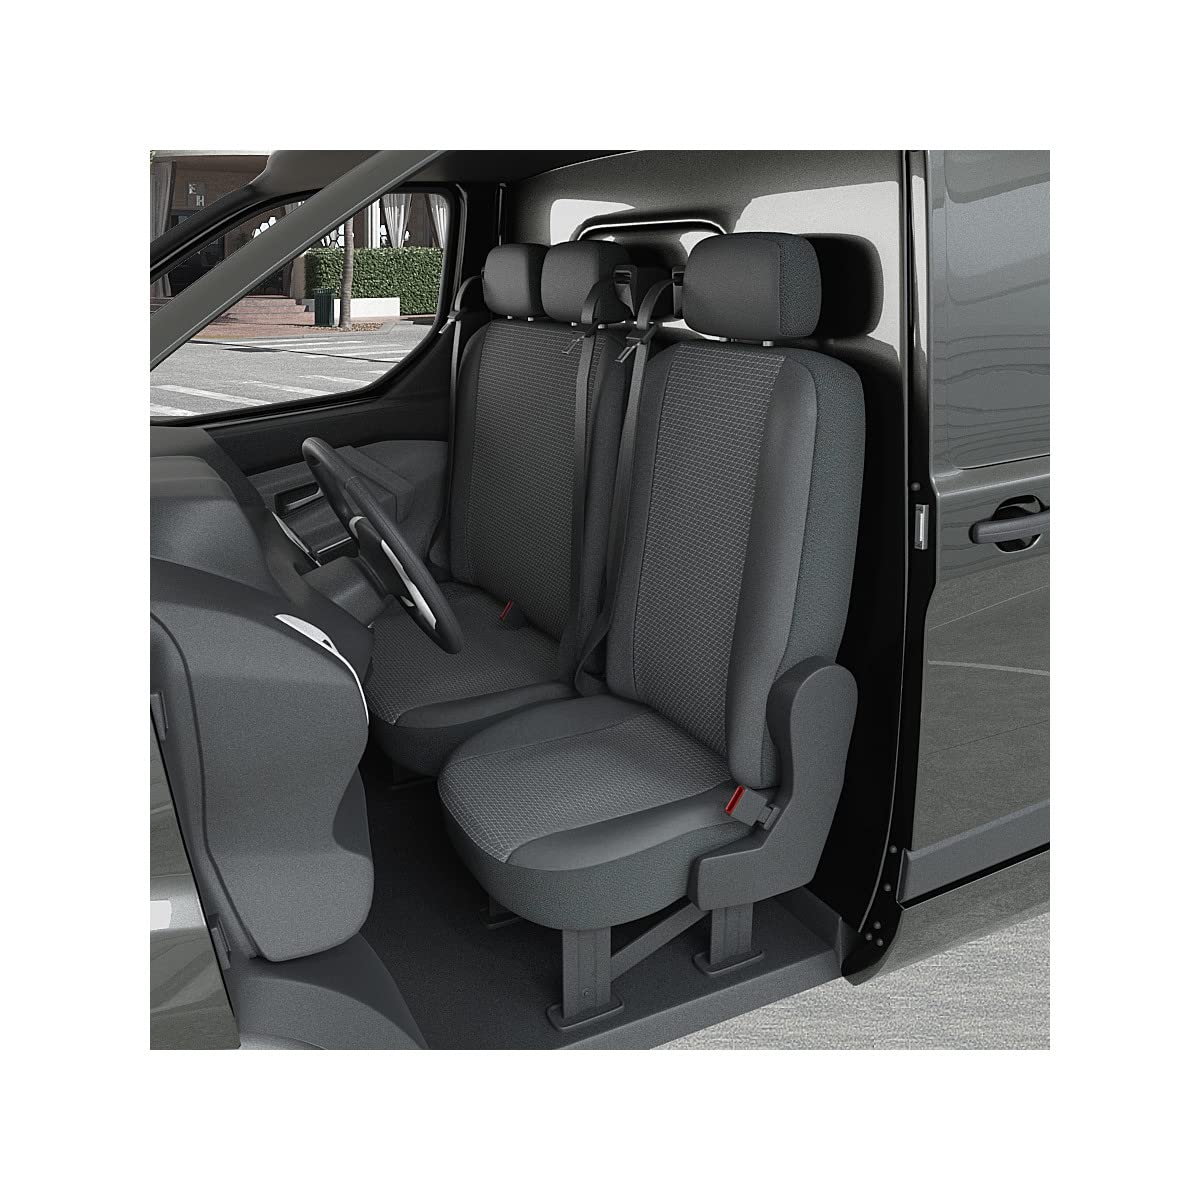 DBS 1013183 Sitzbezug für Auto/Nutzfahrzeuge, Kunstleder, schnelle Montage, kompatibel mit Airbag-Isofix-1013183 von DBS